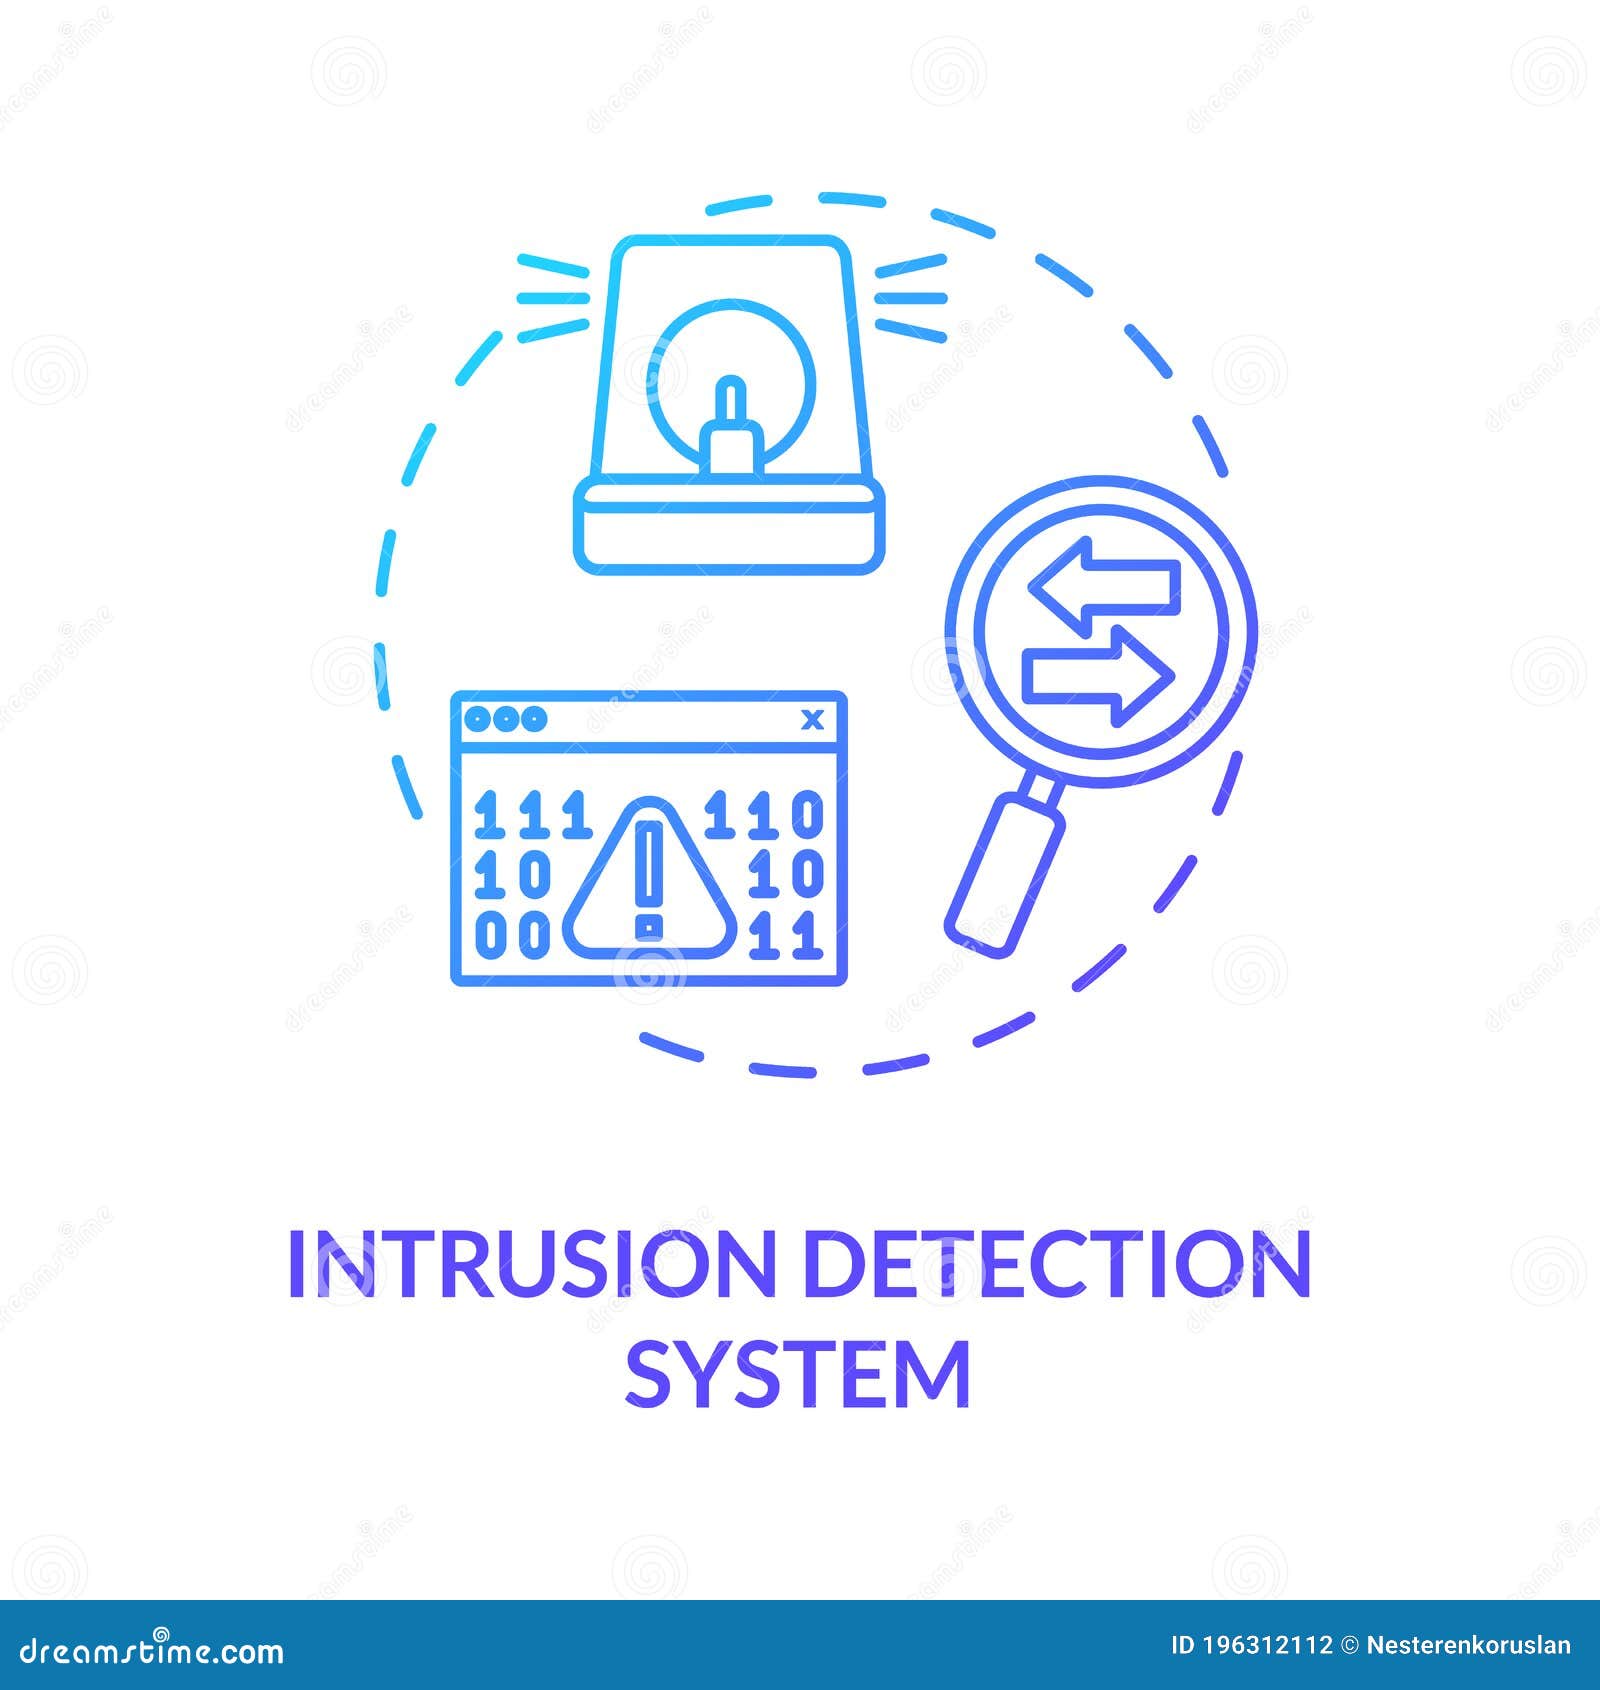 Intrusion Prevention System Icon Check Mark